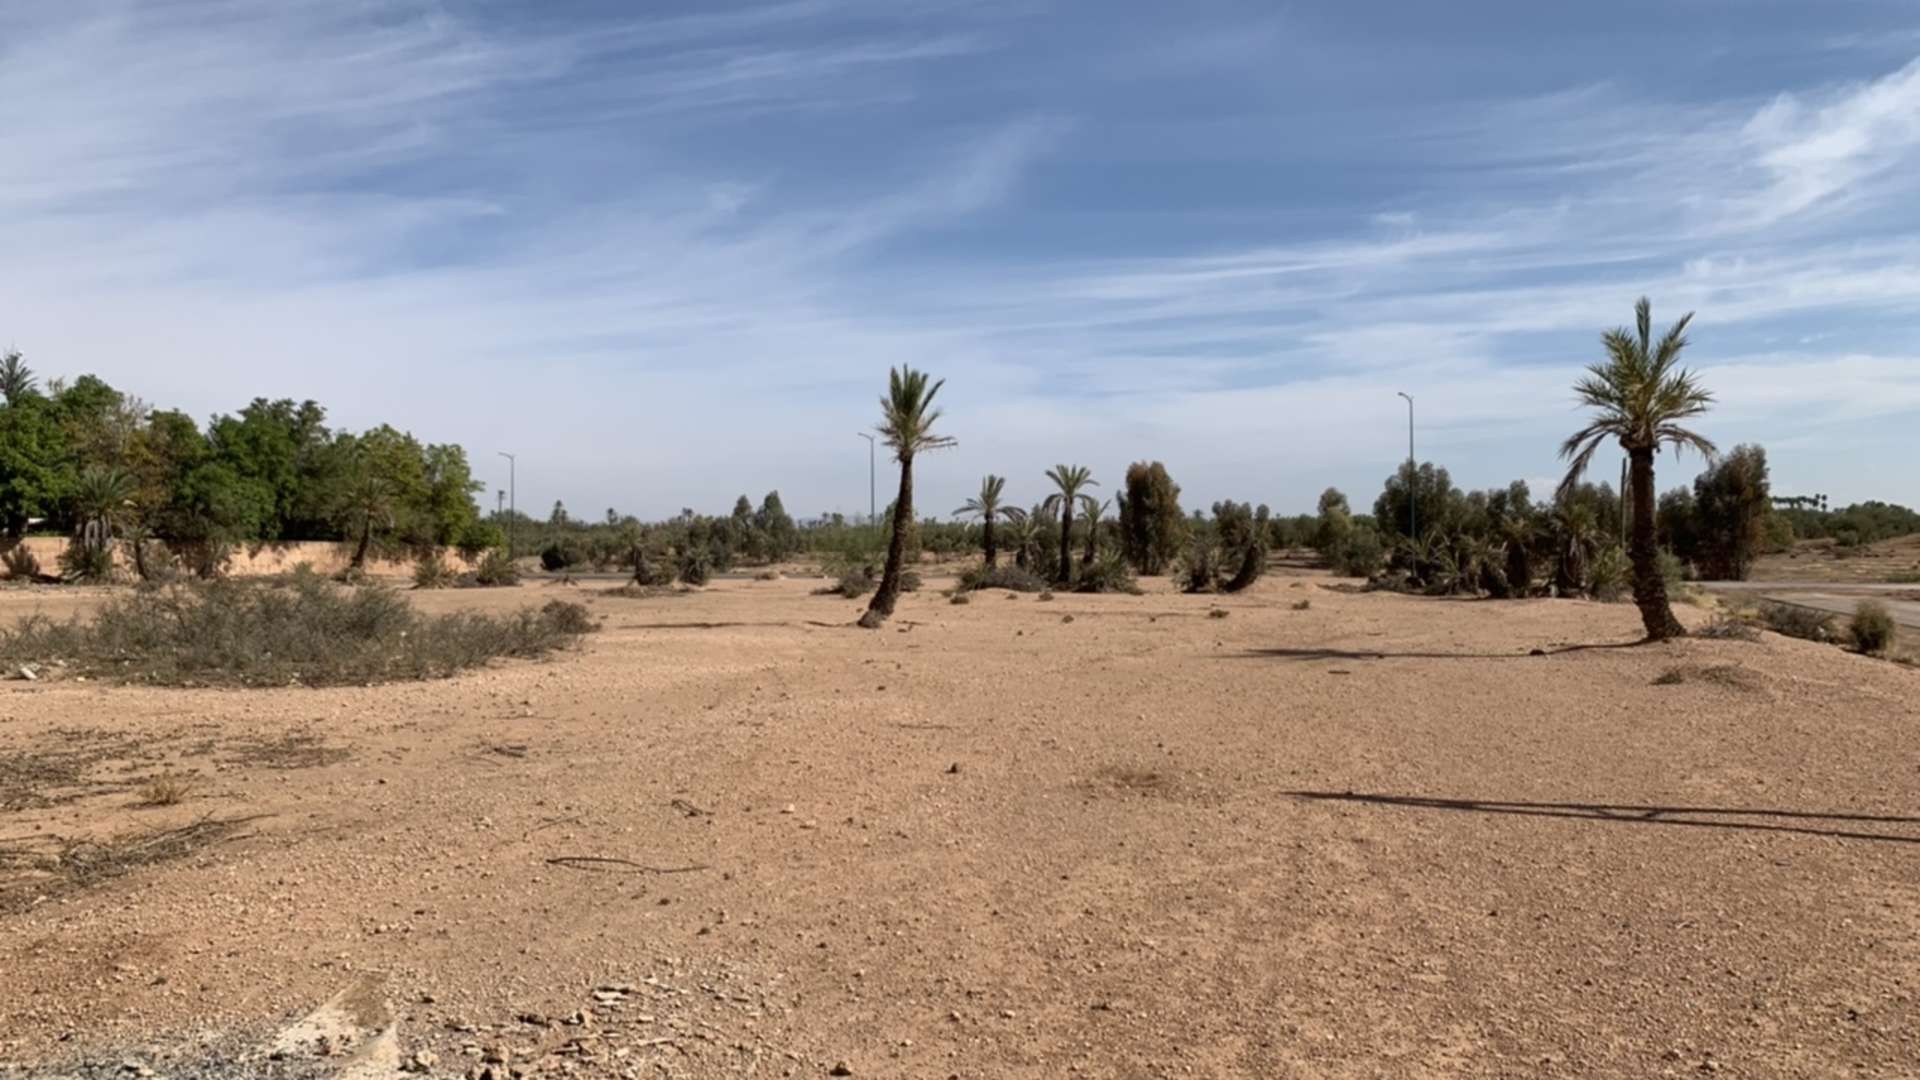 Vente,Terrains & Fermes,Lot de terrain d’angle dans la Palmeraie bien situé ,Marrakech,Palmeraie